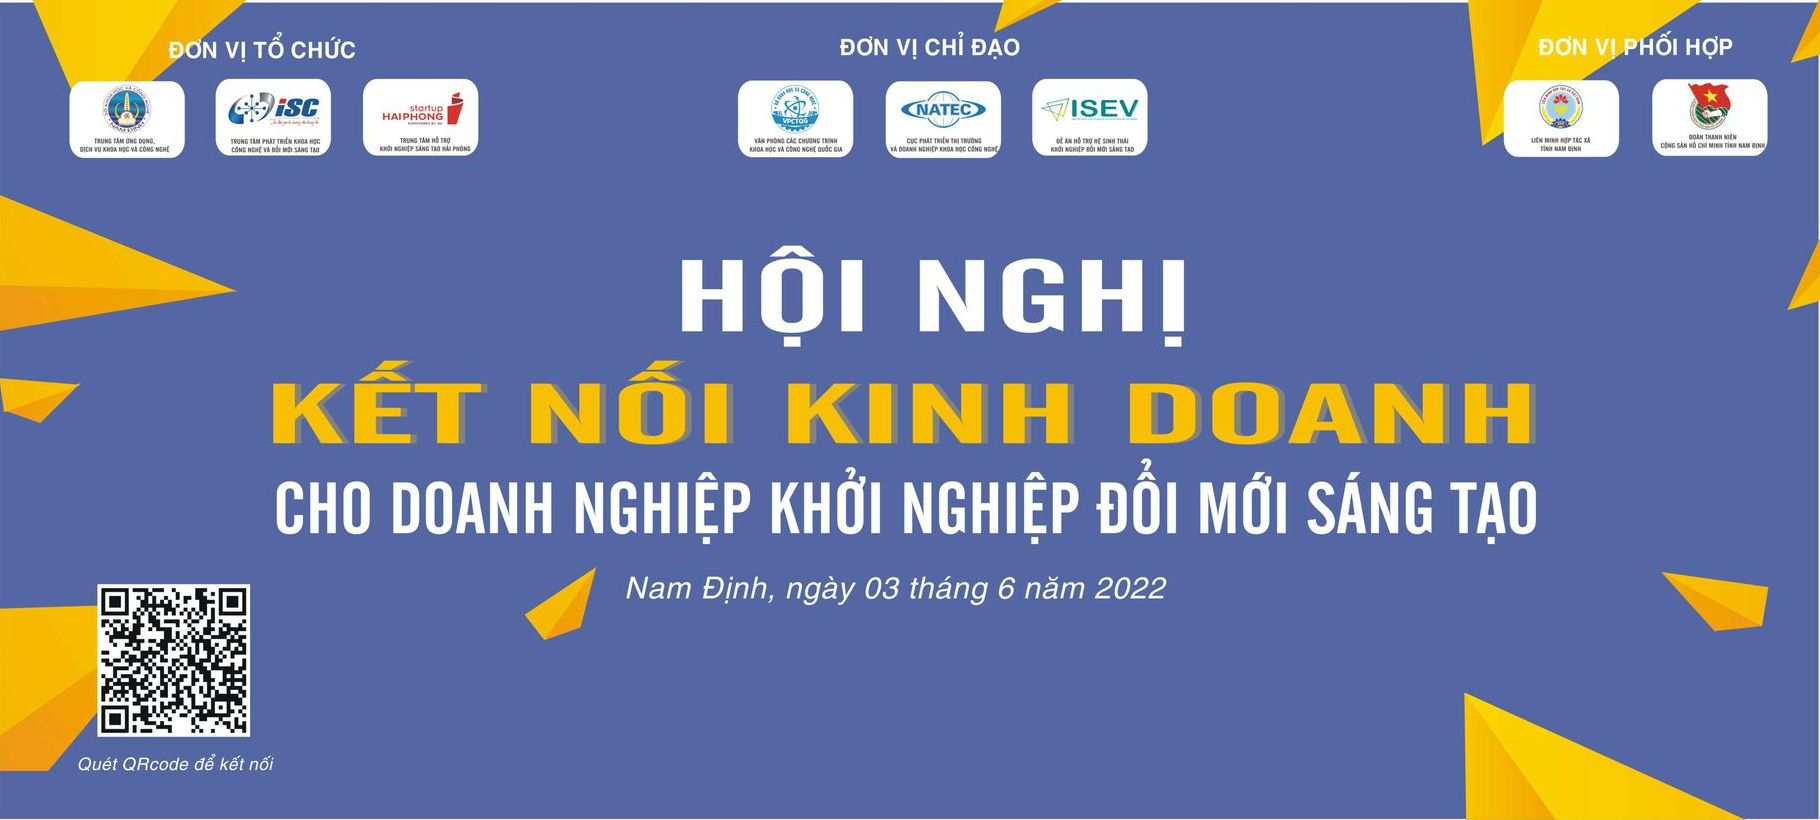 Viindoo tham dự Hội nghị kết nối kinh doanh cho doanh nghiệp khởi nghiệp đổi mới sáng tạo Nam Định